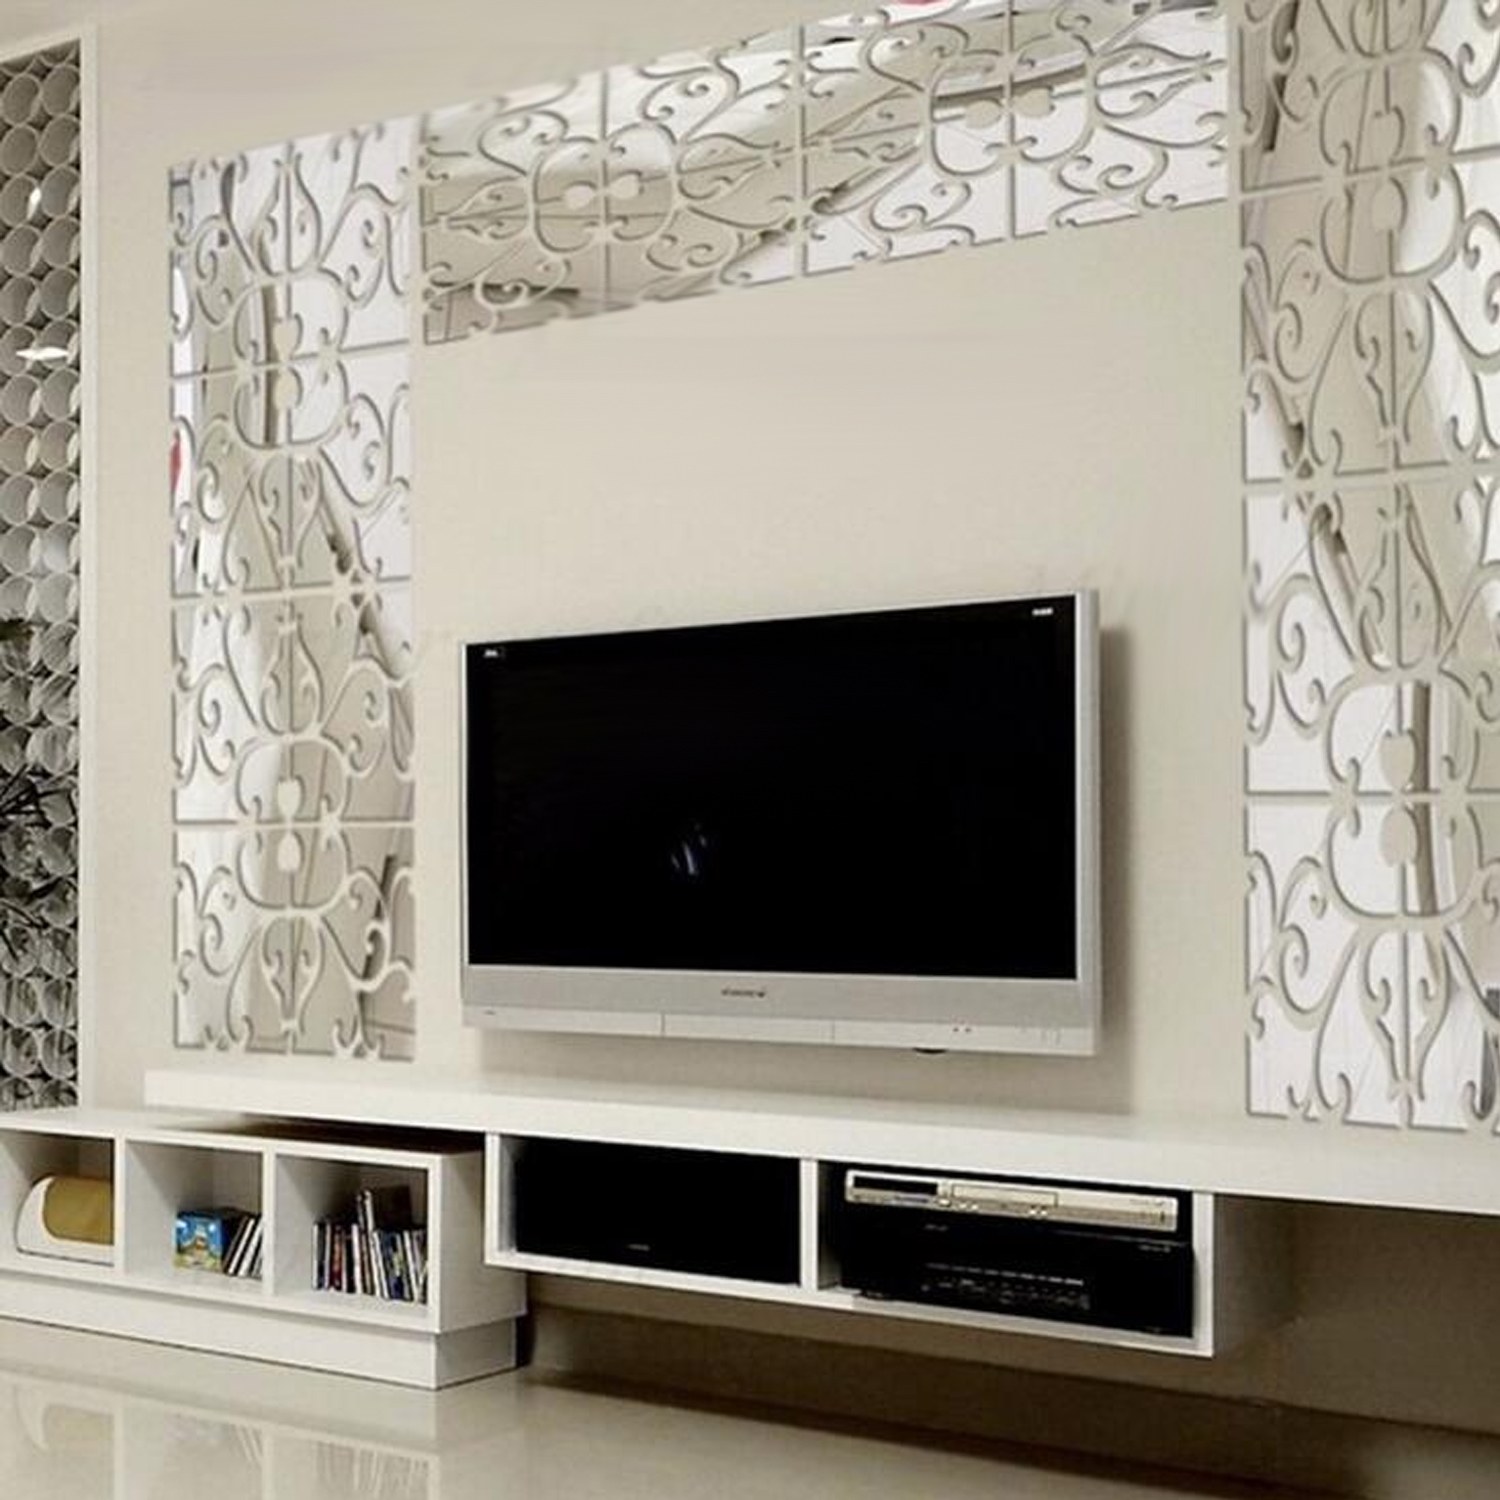 Рамки вокруг экрана. Гостиная с телевизором на стене. Декор стены с телевизором. Декоративная панель под телевизор. Телевизор на стене в интерьере.